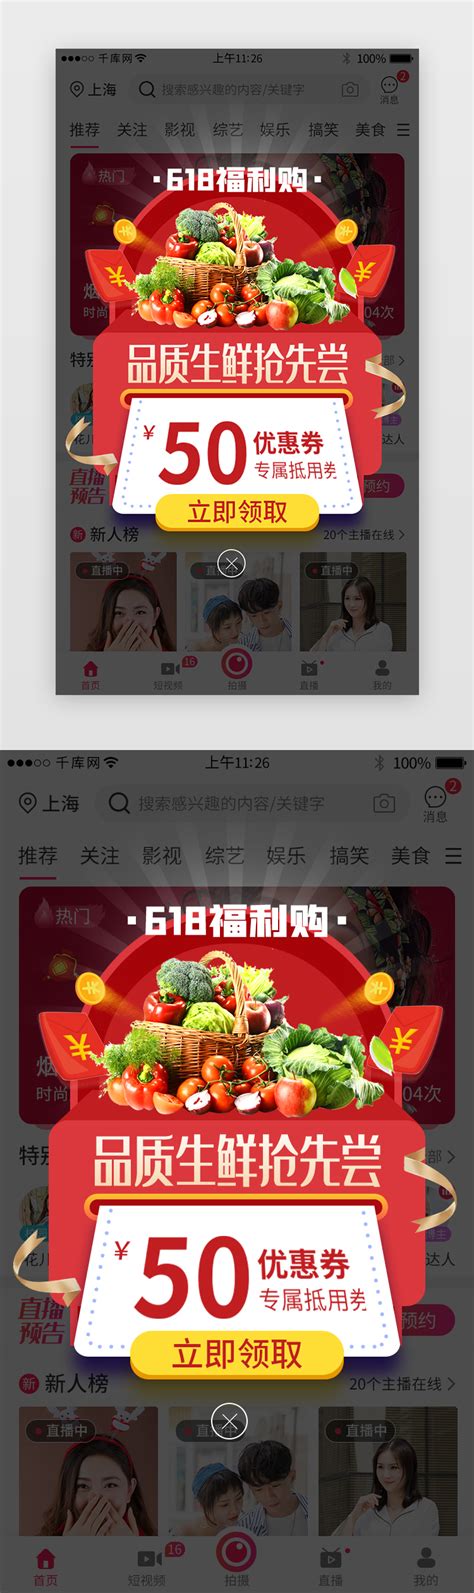 上海品质网站设计报价公司(上海质量网站优化软件怎么样)_V优客